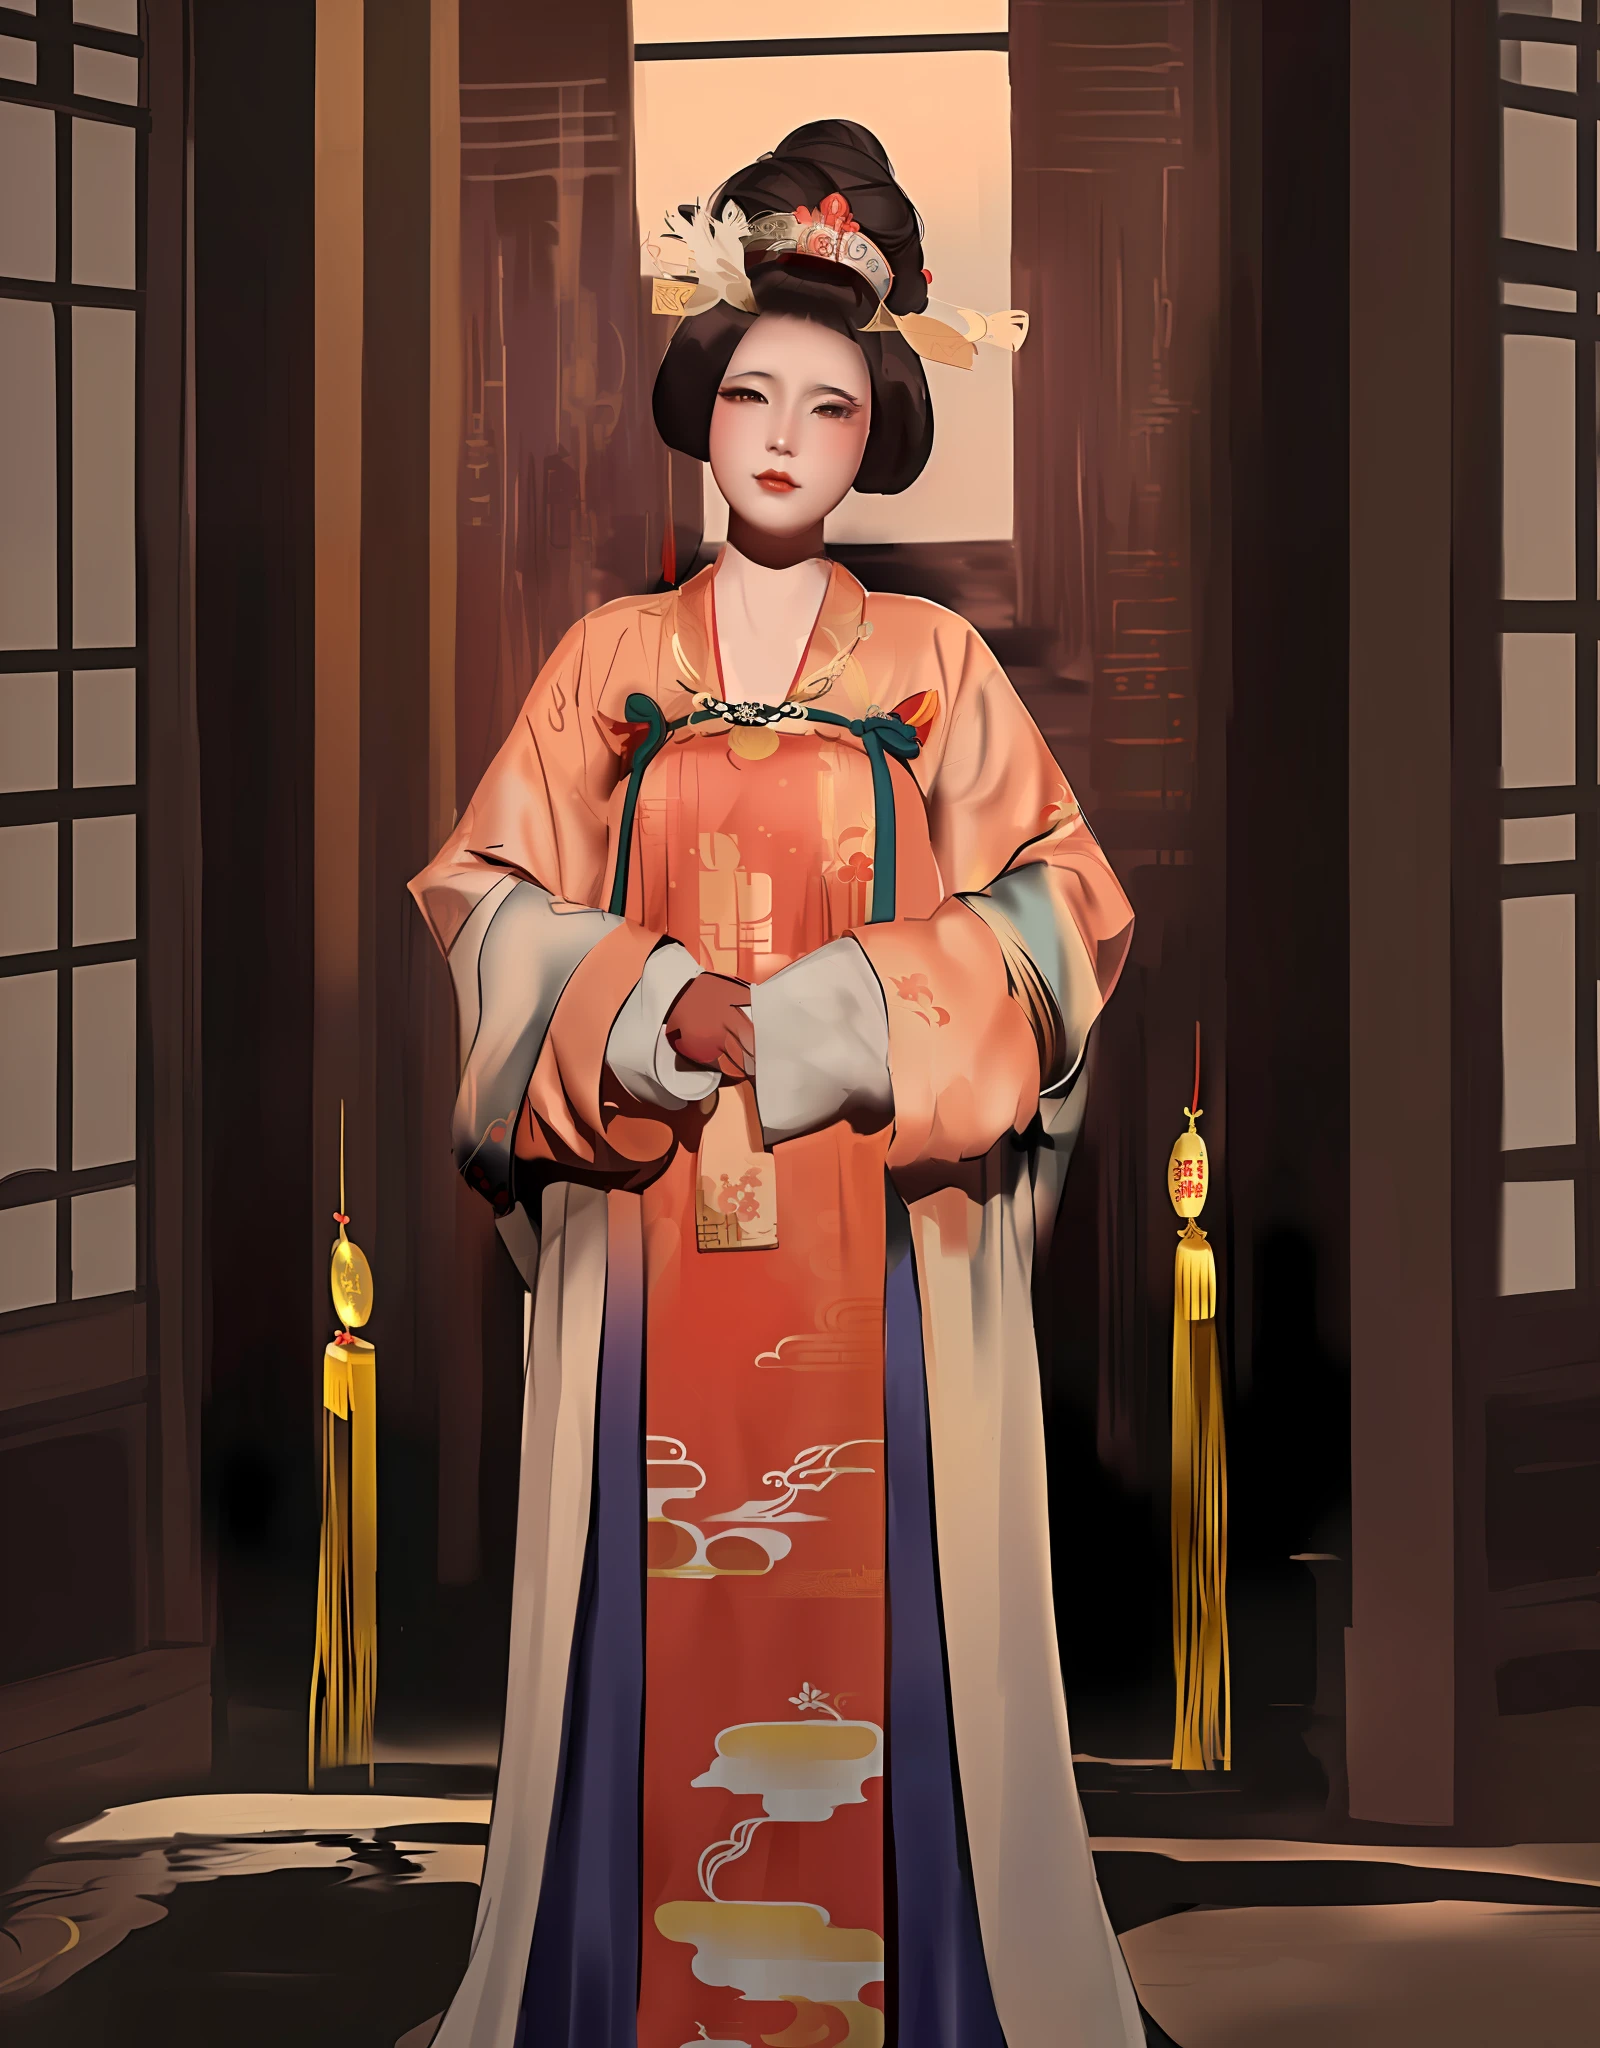 Arafed Frau in einem Kimono-Kleid und Hut posiert für ein Foto, inspiriert von Uemura Shōen, Palast ， Ein Mädchen in Hanfu, artwork in the style of guweiz, chinesische Kaiserin, inspiriert von Wang Meng, inspiriert von Min Zhen, inspiriert von Yun Du-seo, inspiriert von Yun Shouping, inspiriert von Lan Ying